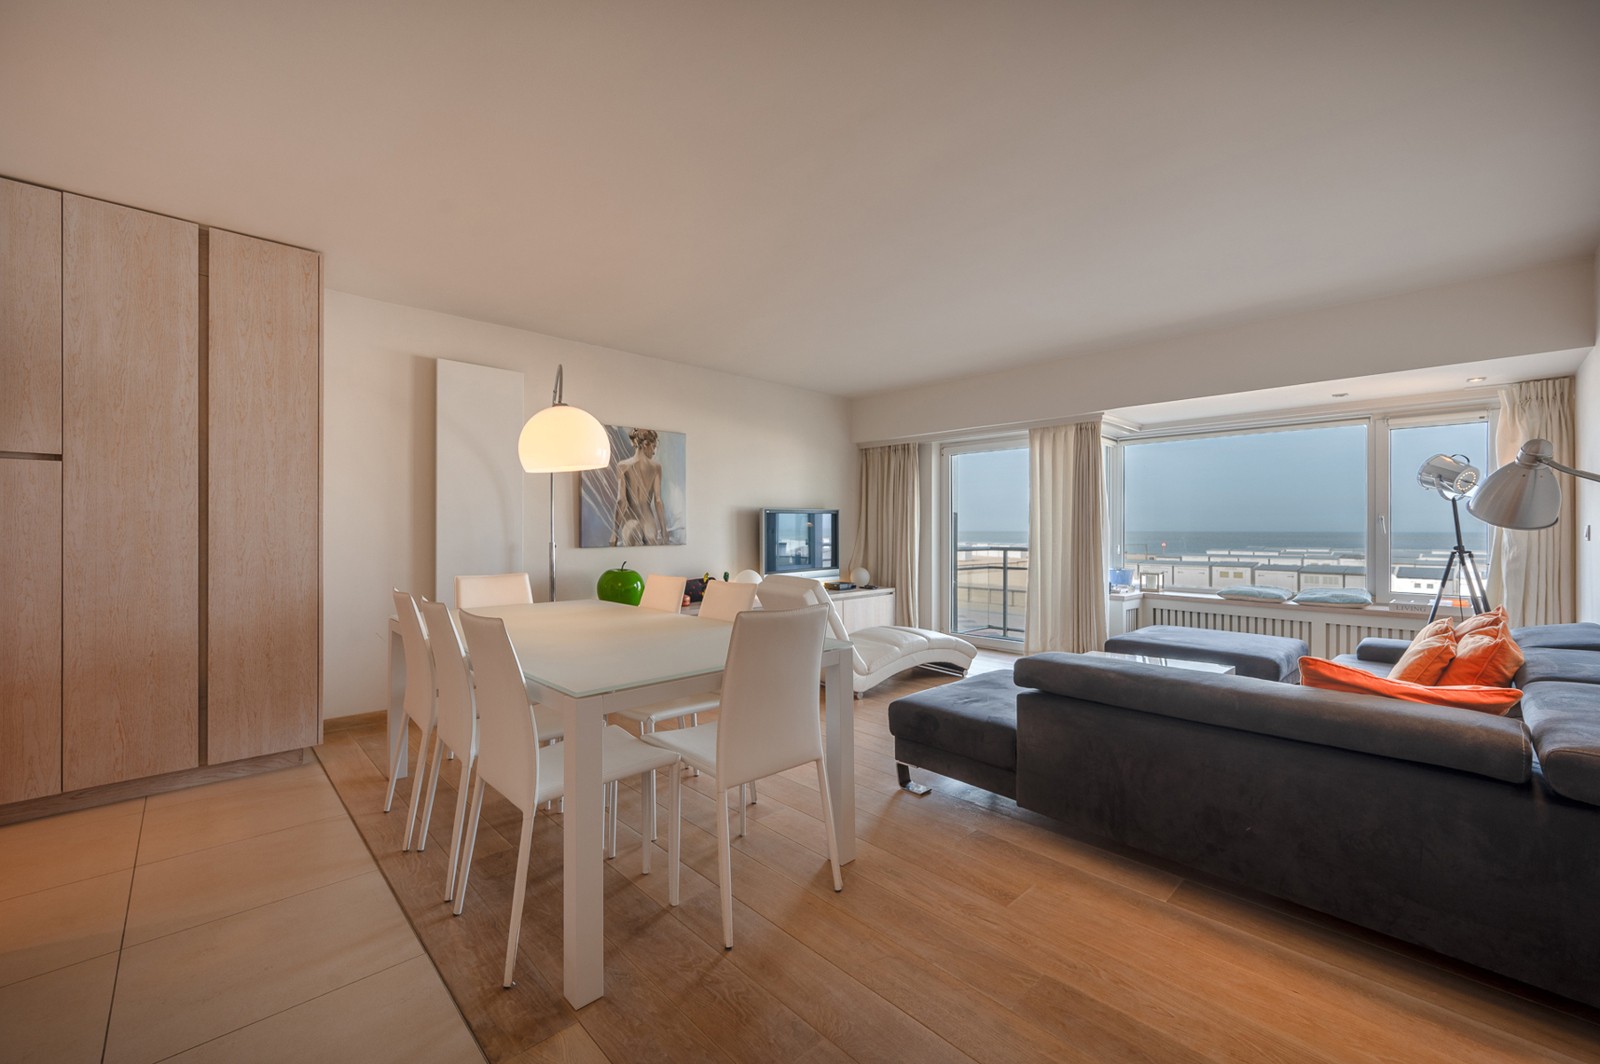 MEUBLÉ : Appartement spacieux avec vue mer et 4 chambres à coucher à Duinbergen ! 1